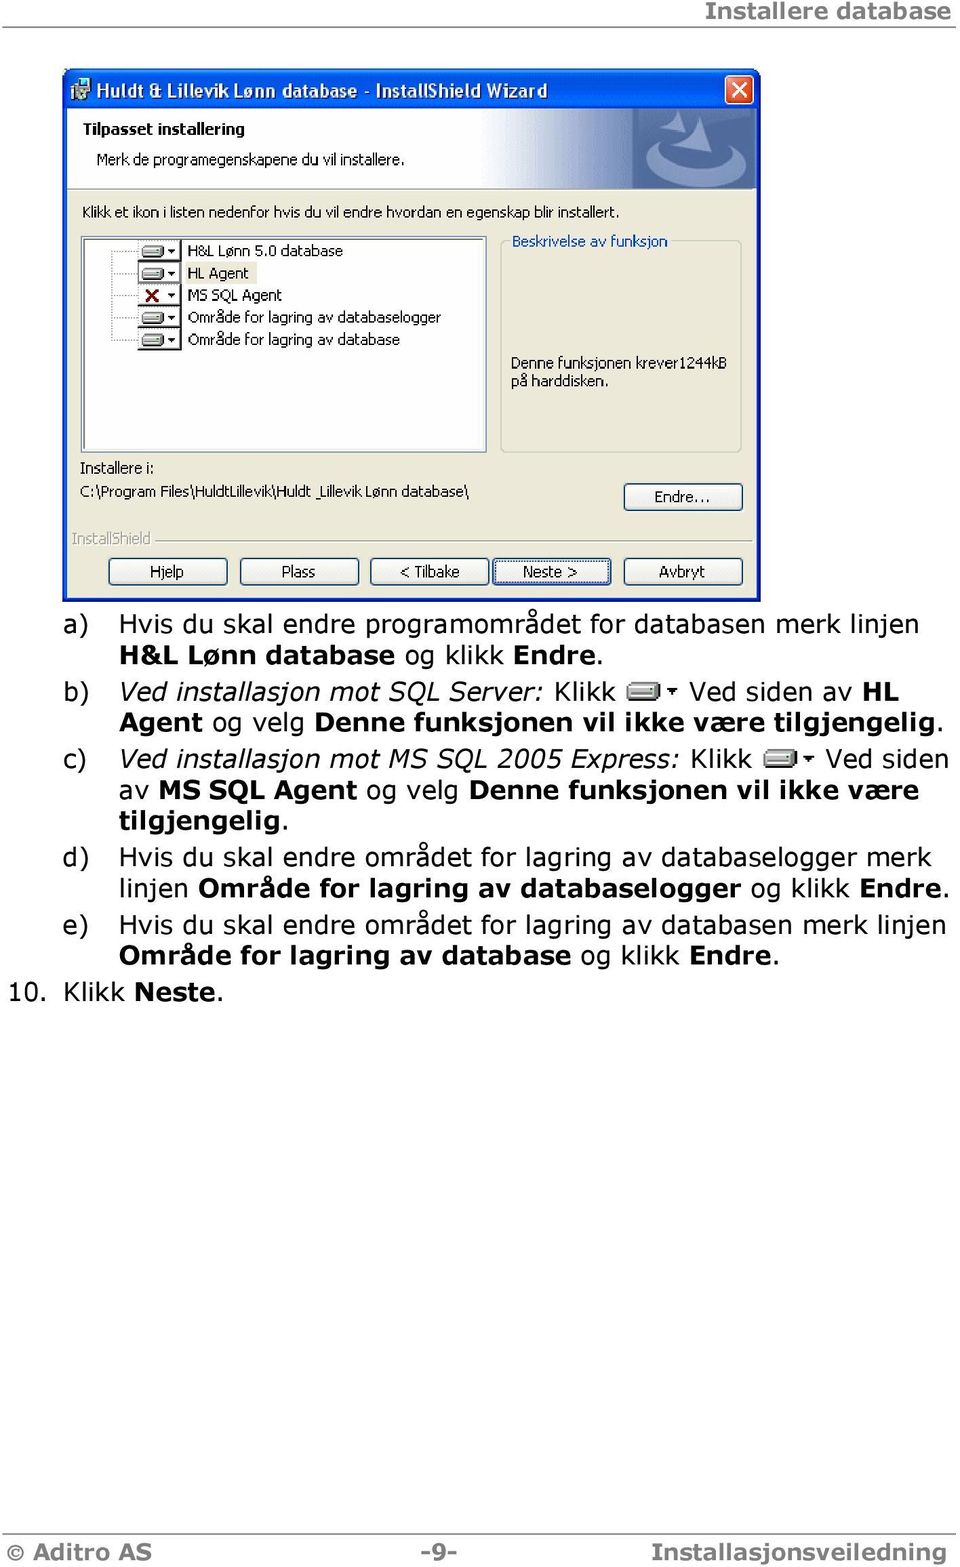 c) Ved installasjon mot MS SQL 2005 Express: Klikk Ved siden av MS SQL Agent og velg Denne funksjonen vil ikke være tilgjengelig.